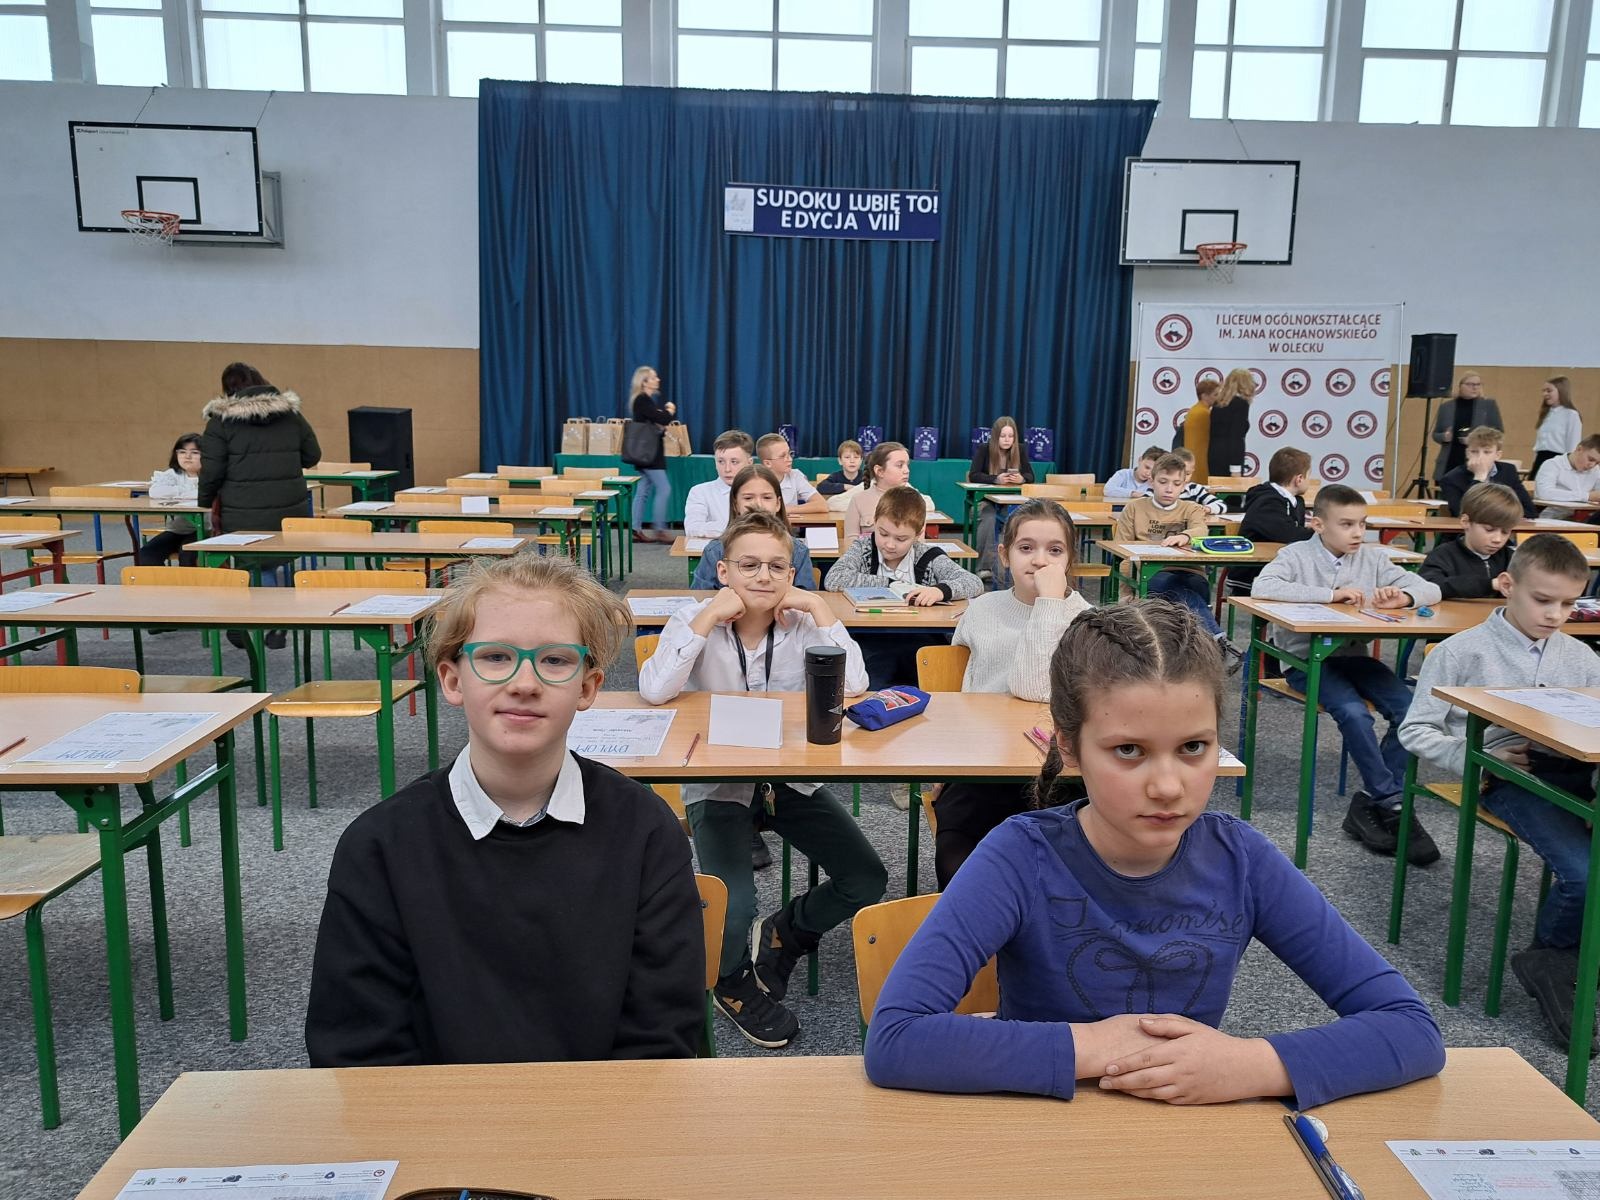 Uczniowie Szkoły Podstawowej Nr 2 im. Mikołaja Kopernika w Olecku  podczas konkursu Sudoku lubię to